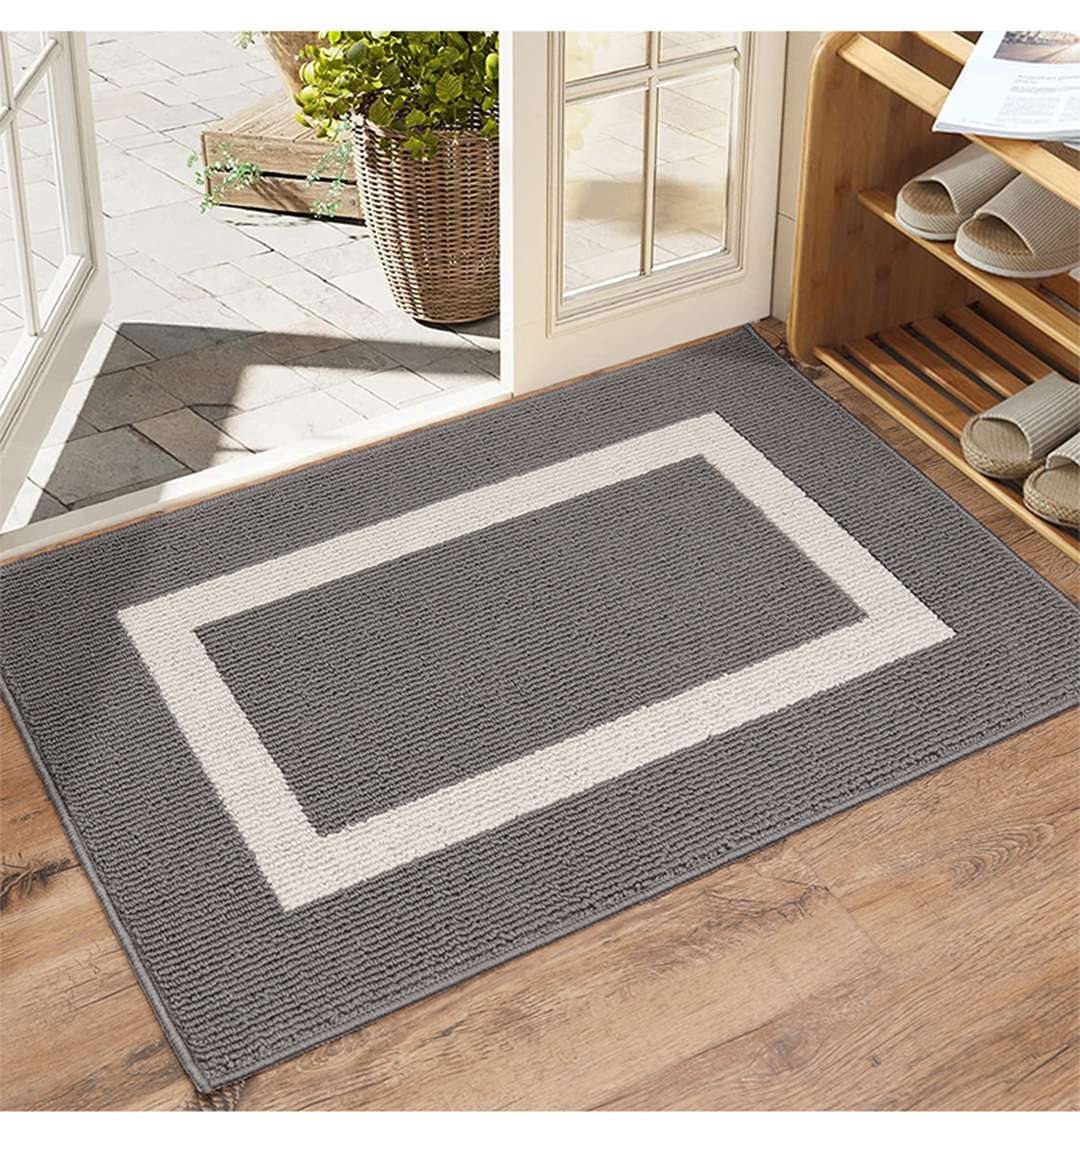 morgantag Indoor Doormat 24x36Durable Anti-Slip Waterproof